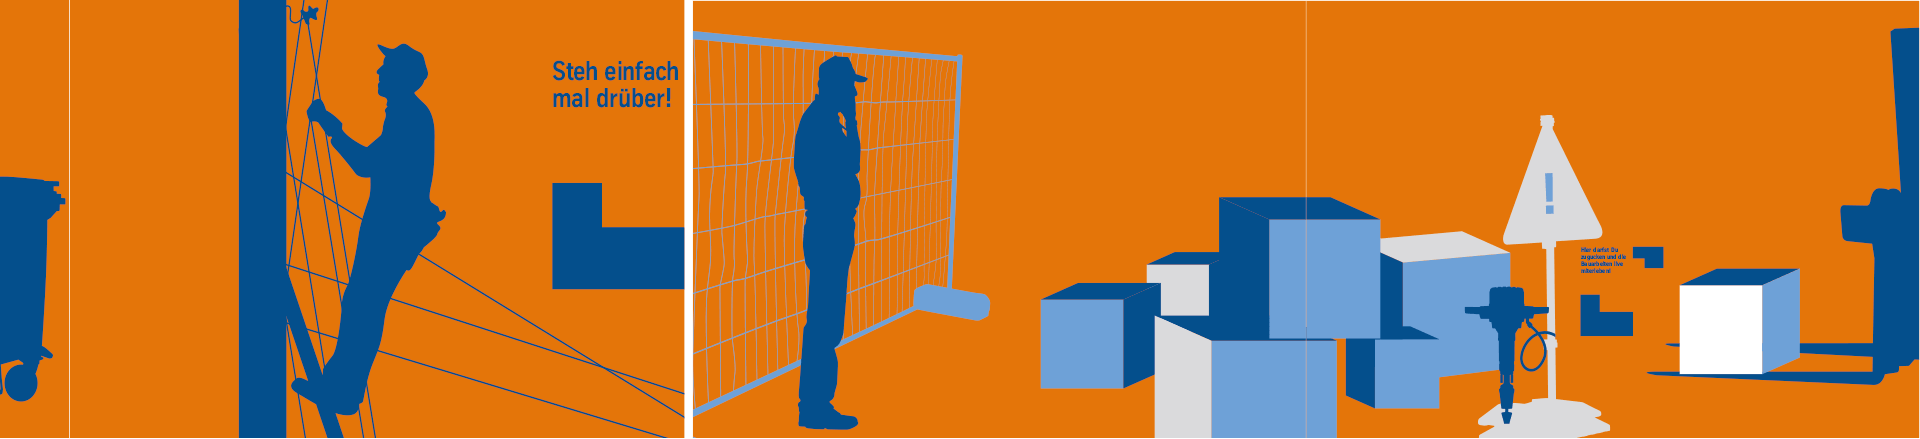 ThyssenKrupp Bauzaun Illustration einer Baustelle mit Menschen mit blauen Motiven auf orangenem Hintergrund